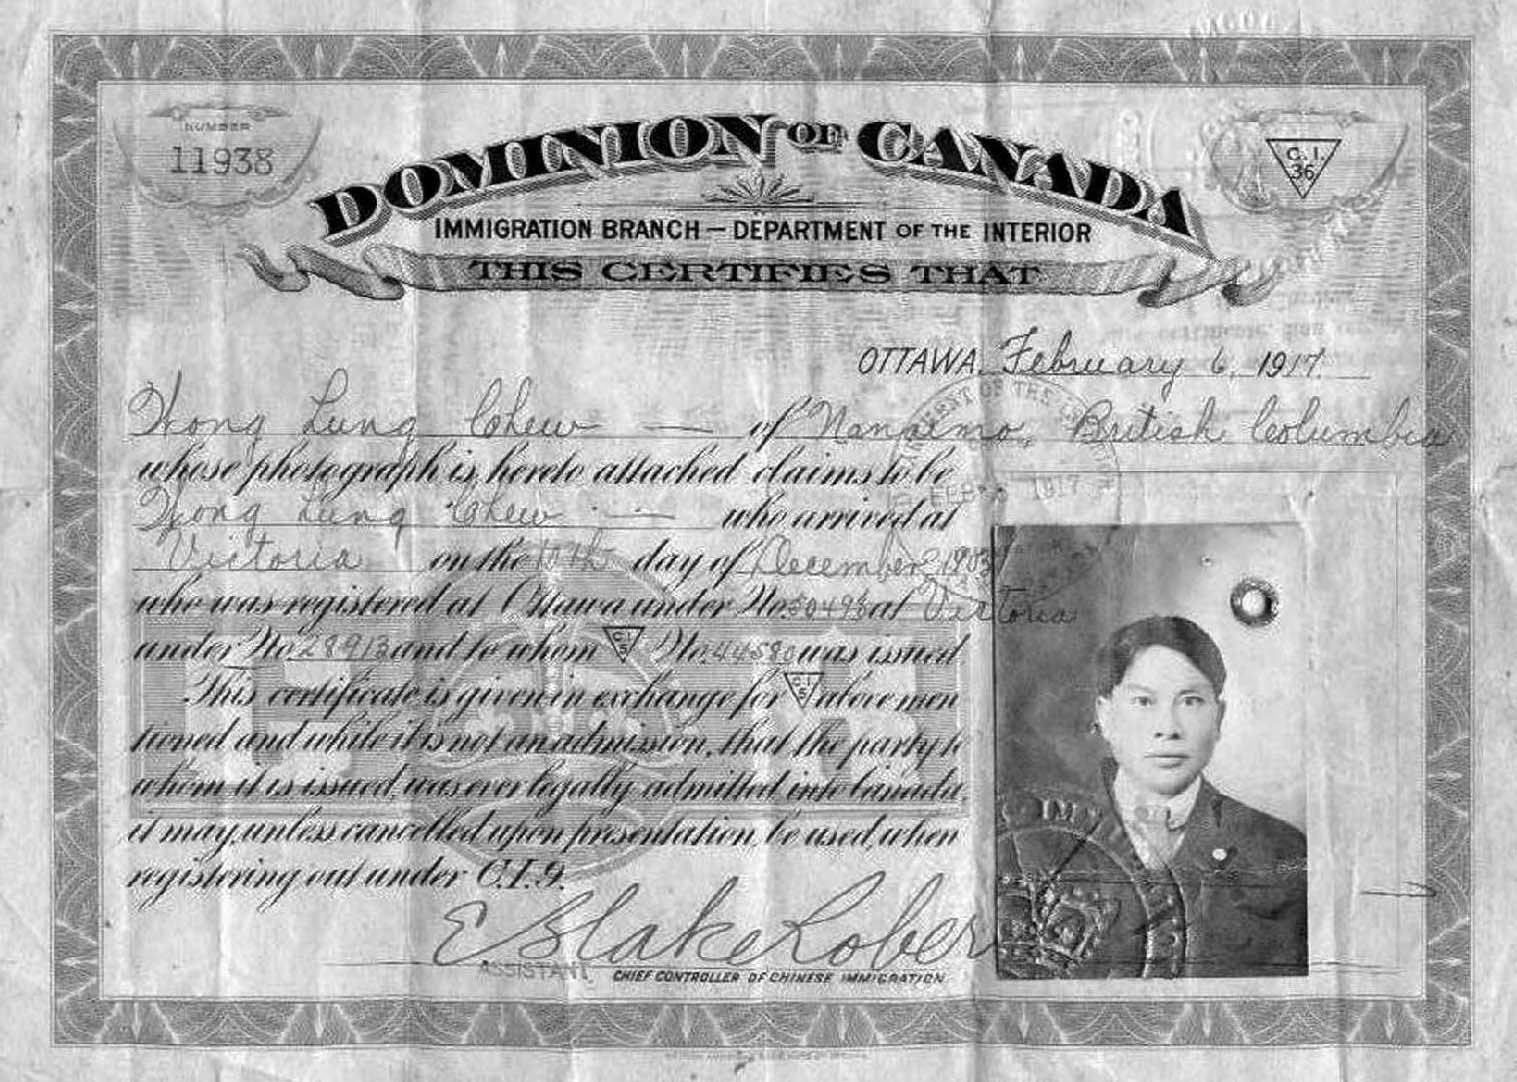 1917年加拿大华人身份证明(人头税证明)